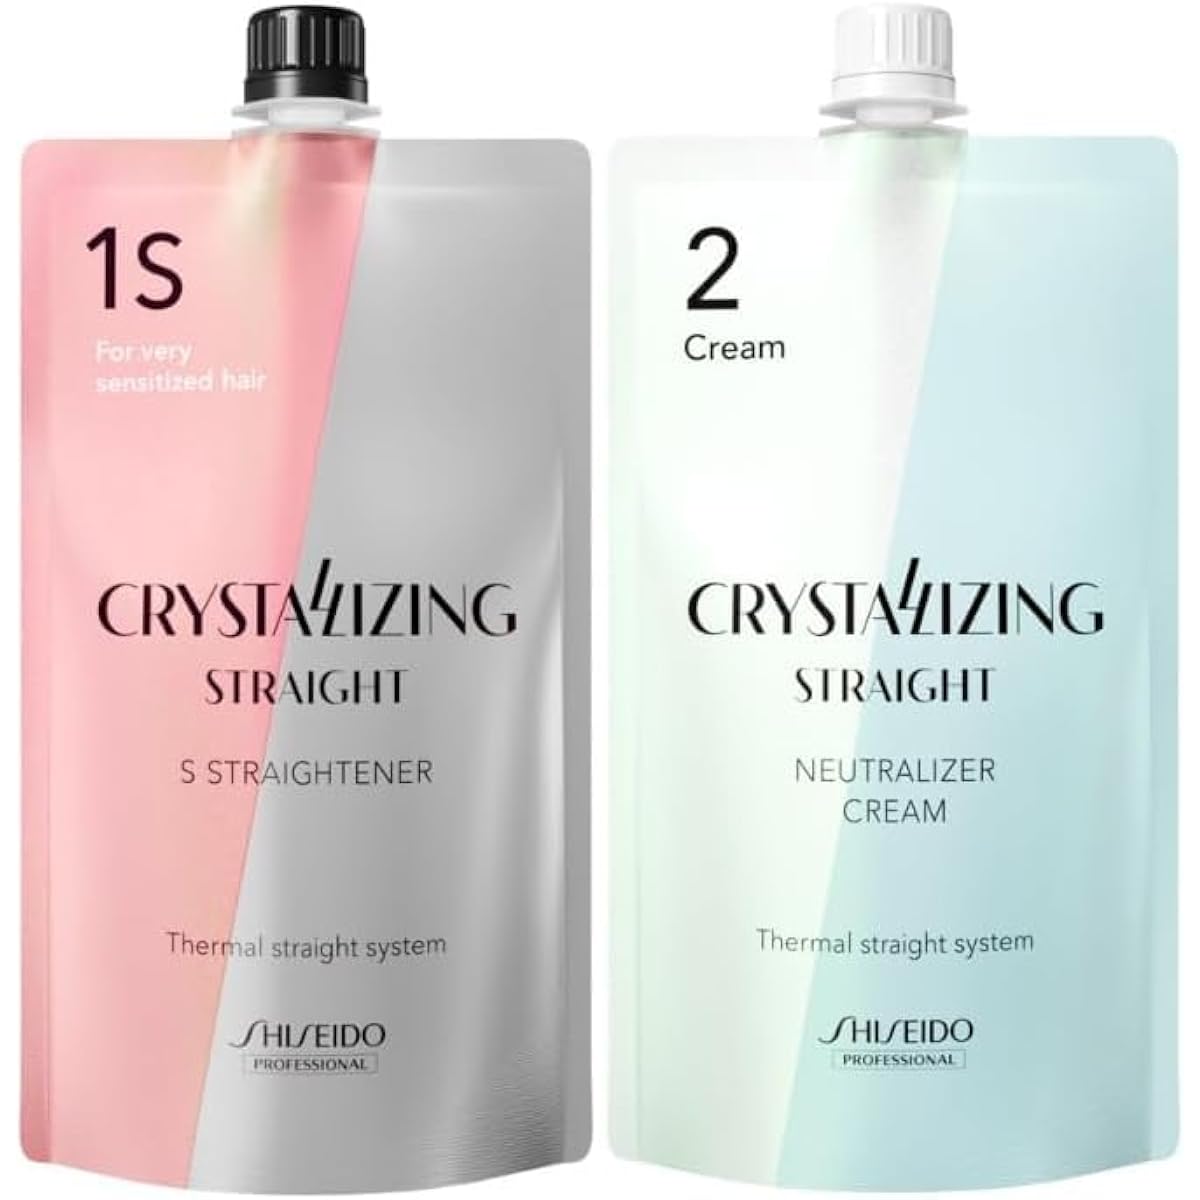 Shiseido Crystallizing Straight S Straightener 1-part & 2-part 400g each for highly damaged hair